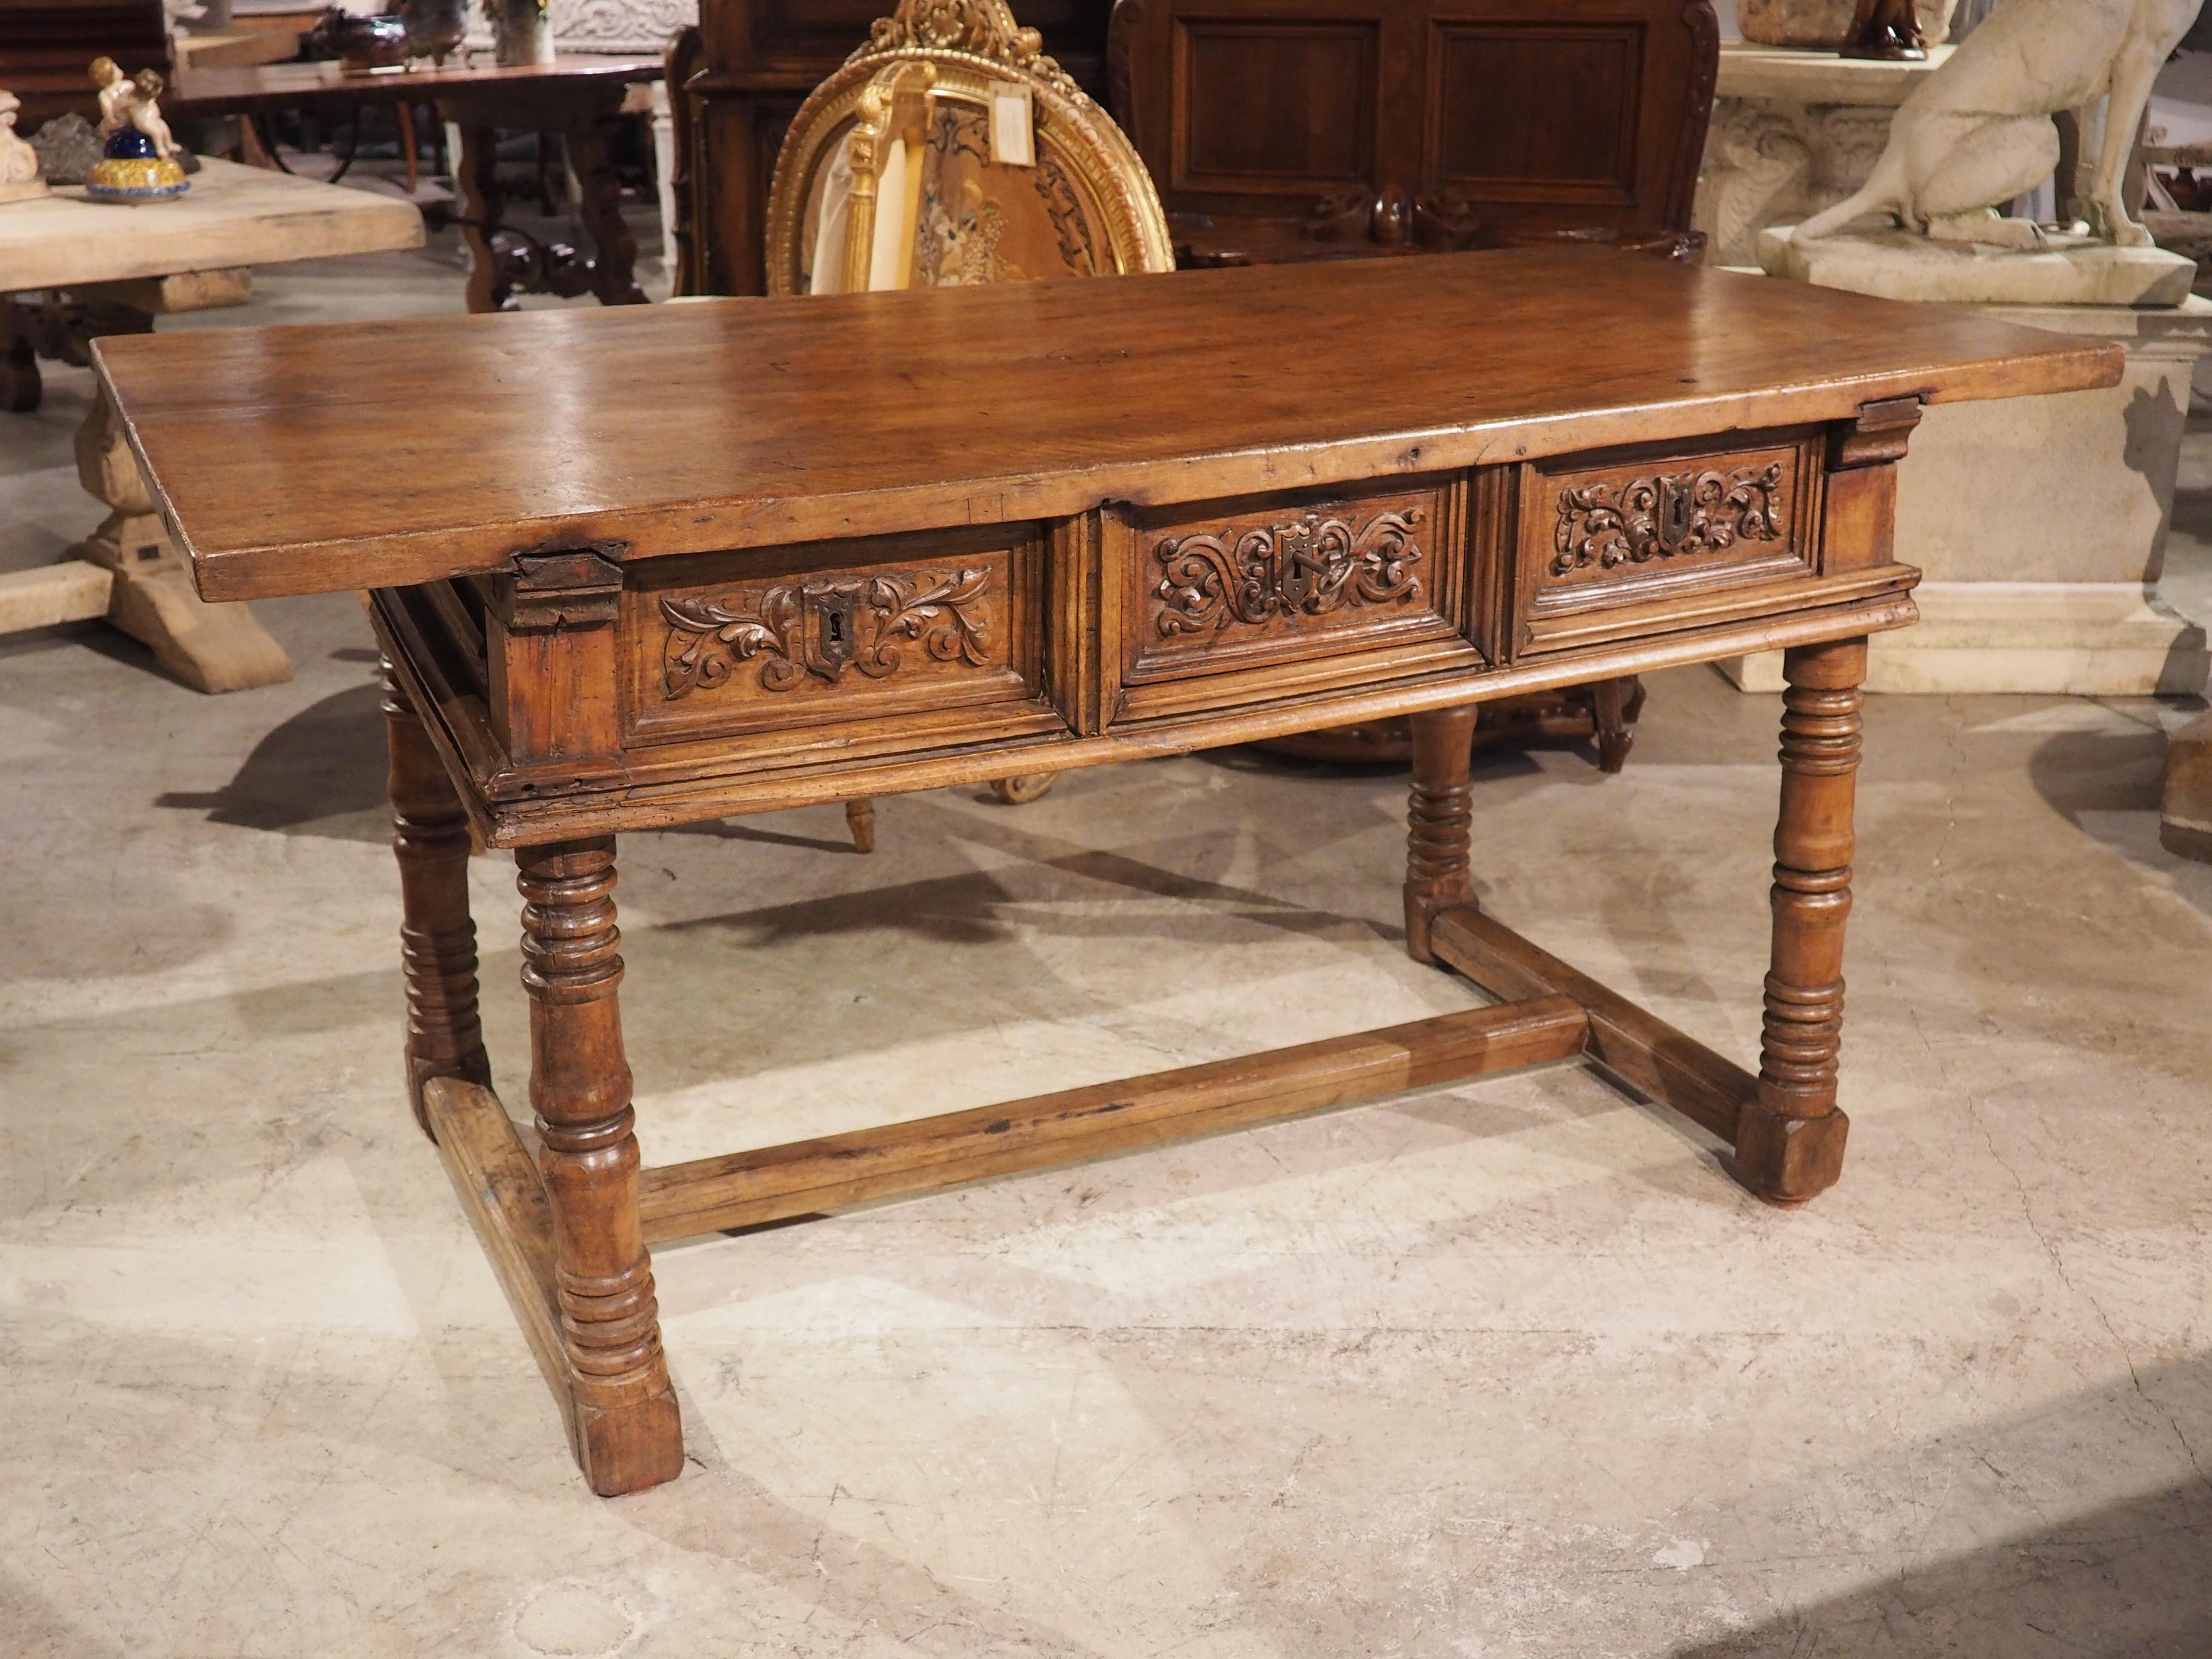 Ein wunderschön gearbeiteter Holztisch aus Spanien. Das Nussbaumholz wurde am Ende der Renaissance (in den 1600er Jahren) handgeschnitzt. Wie bei den meisten spanischen Renaissancetischen ruht die 1 ½